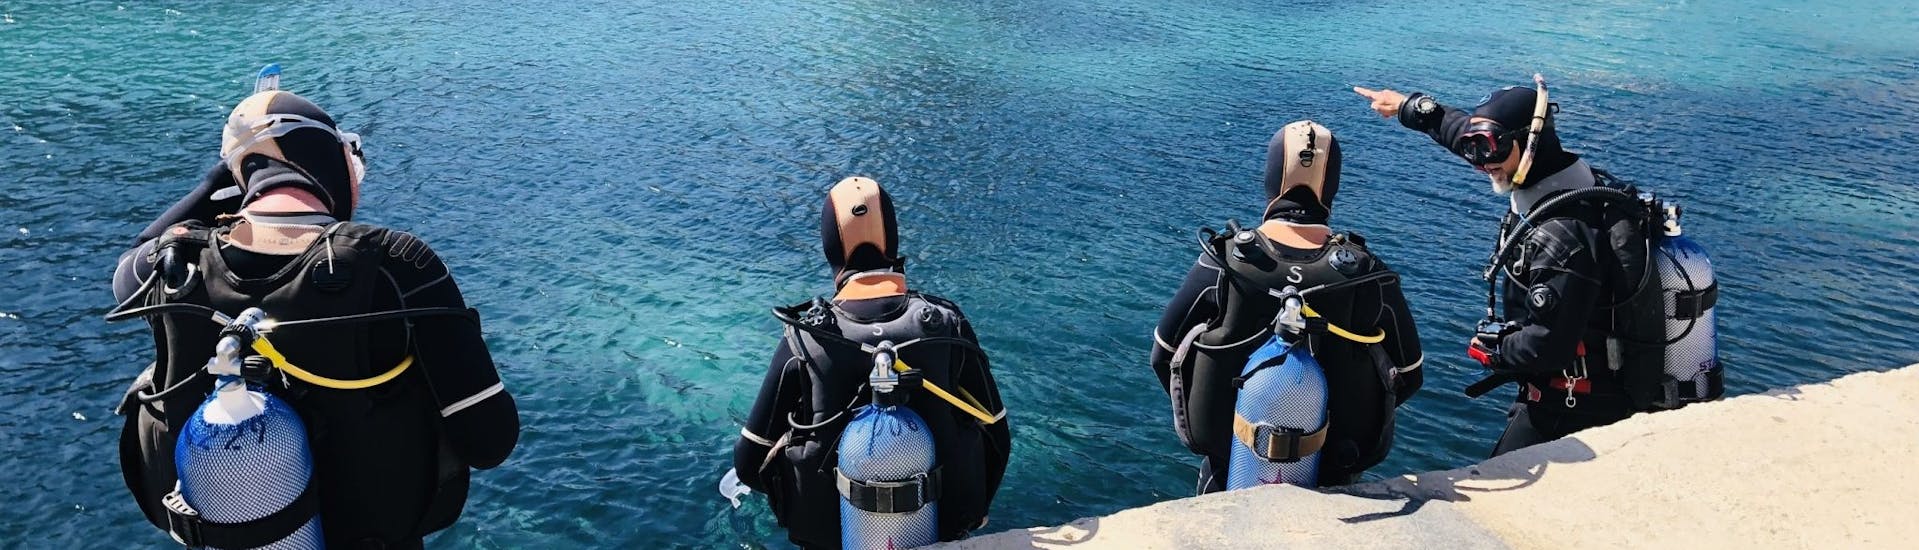 Corso di immersione (PADI) per principianti con Starfish Diving Malta.